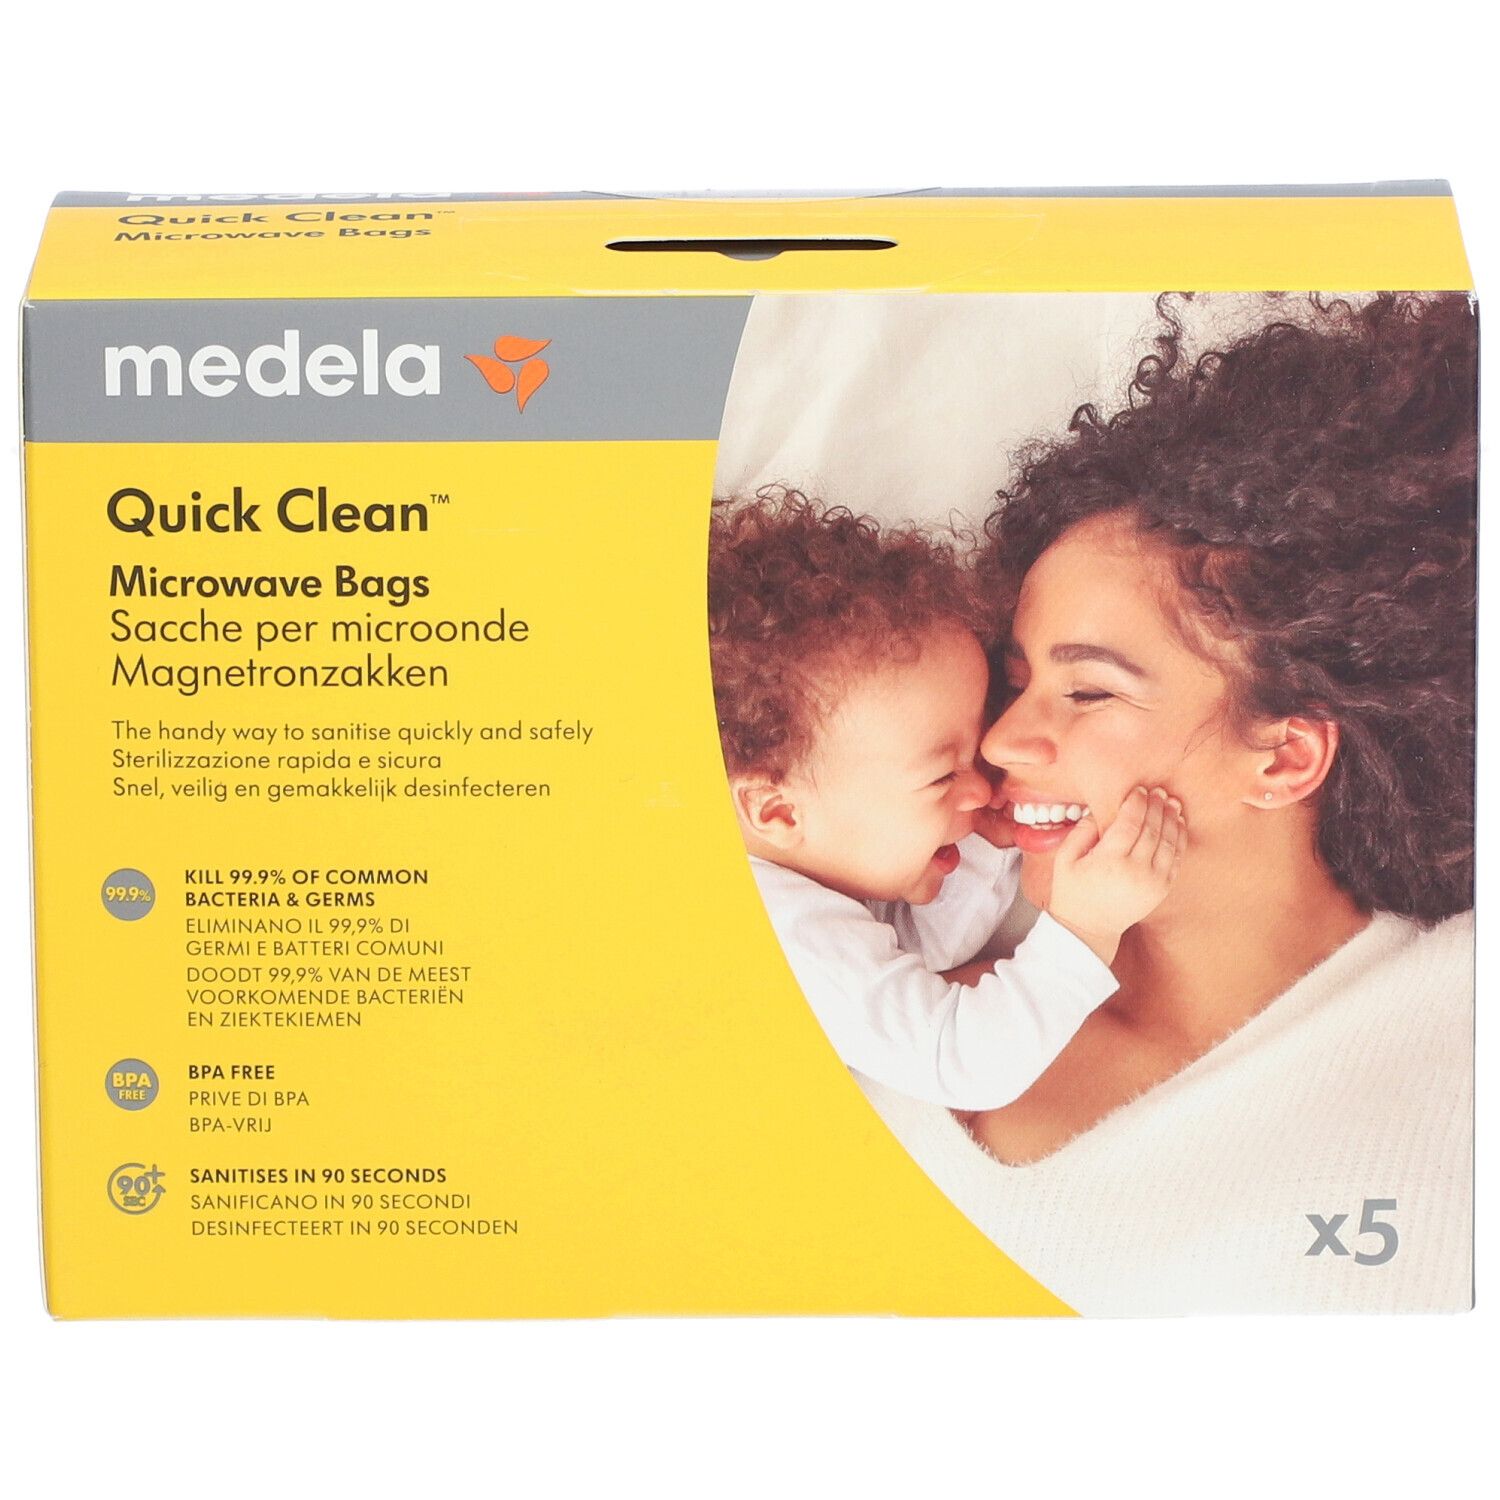 Medela Quick Clean Mikrowellen Sterilisationsbeutel